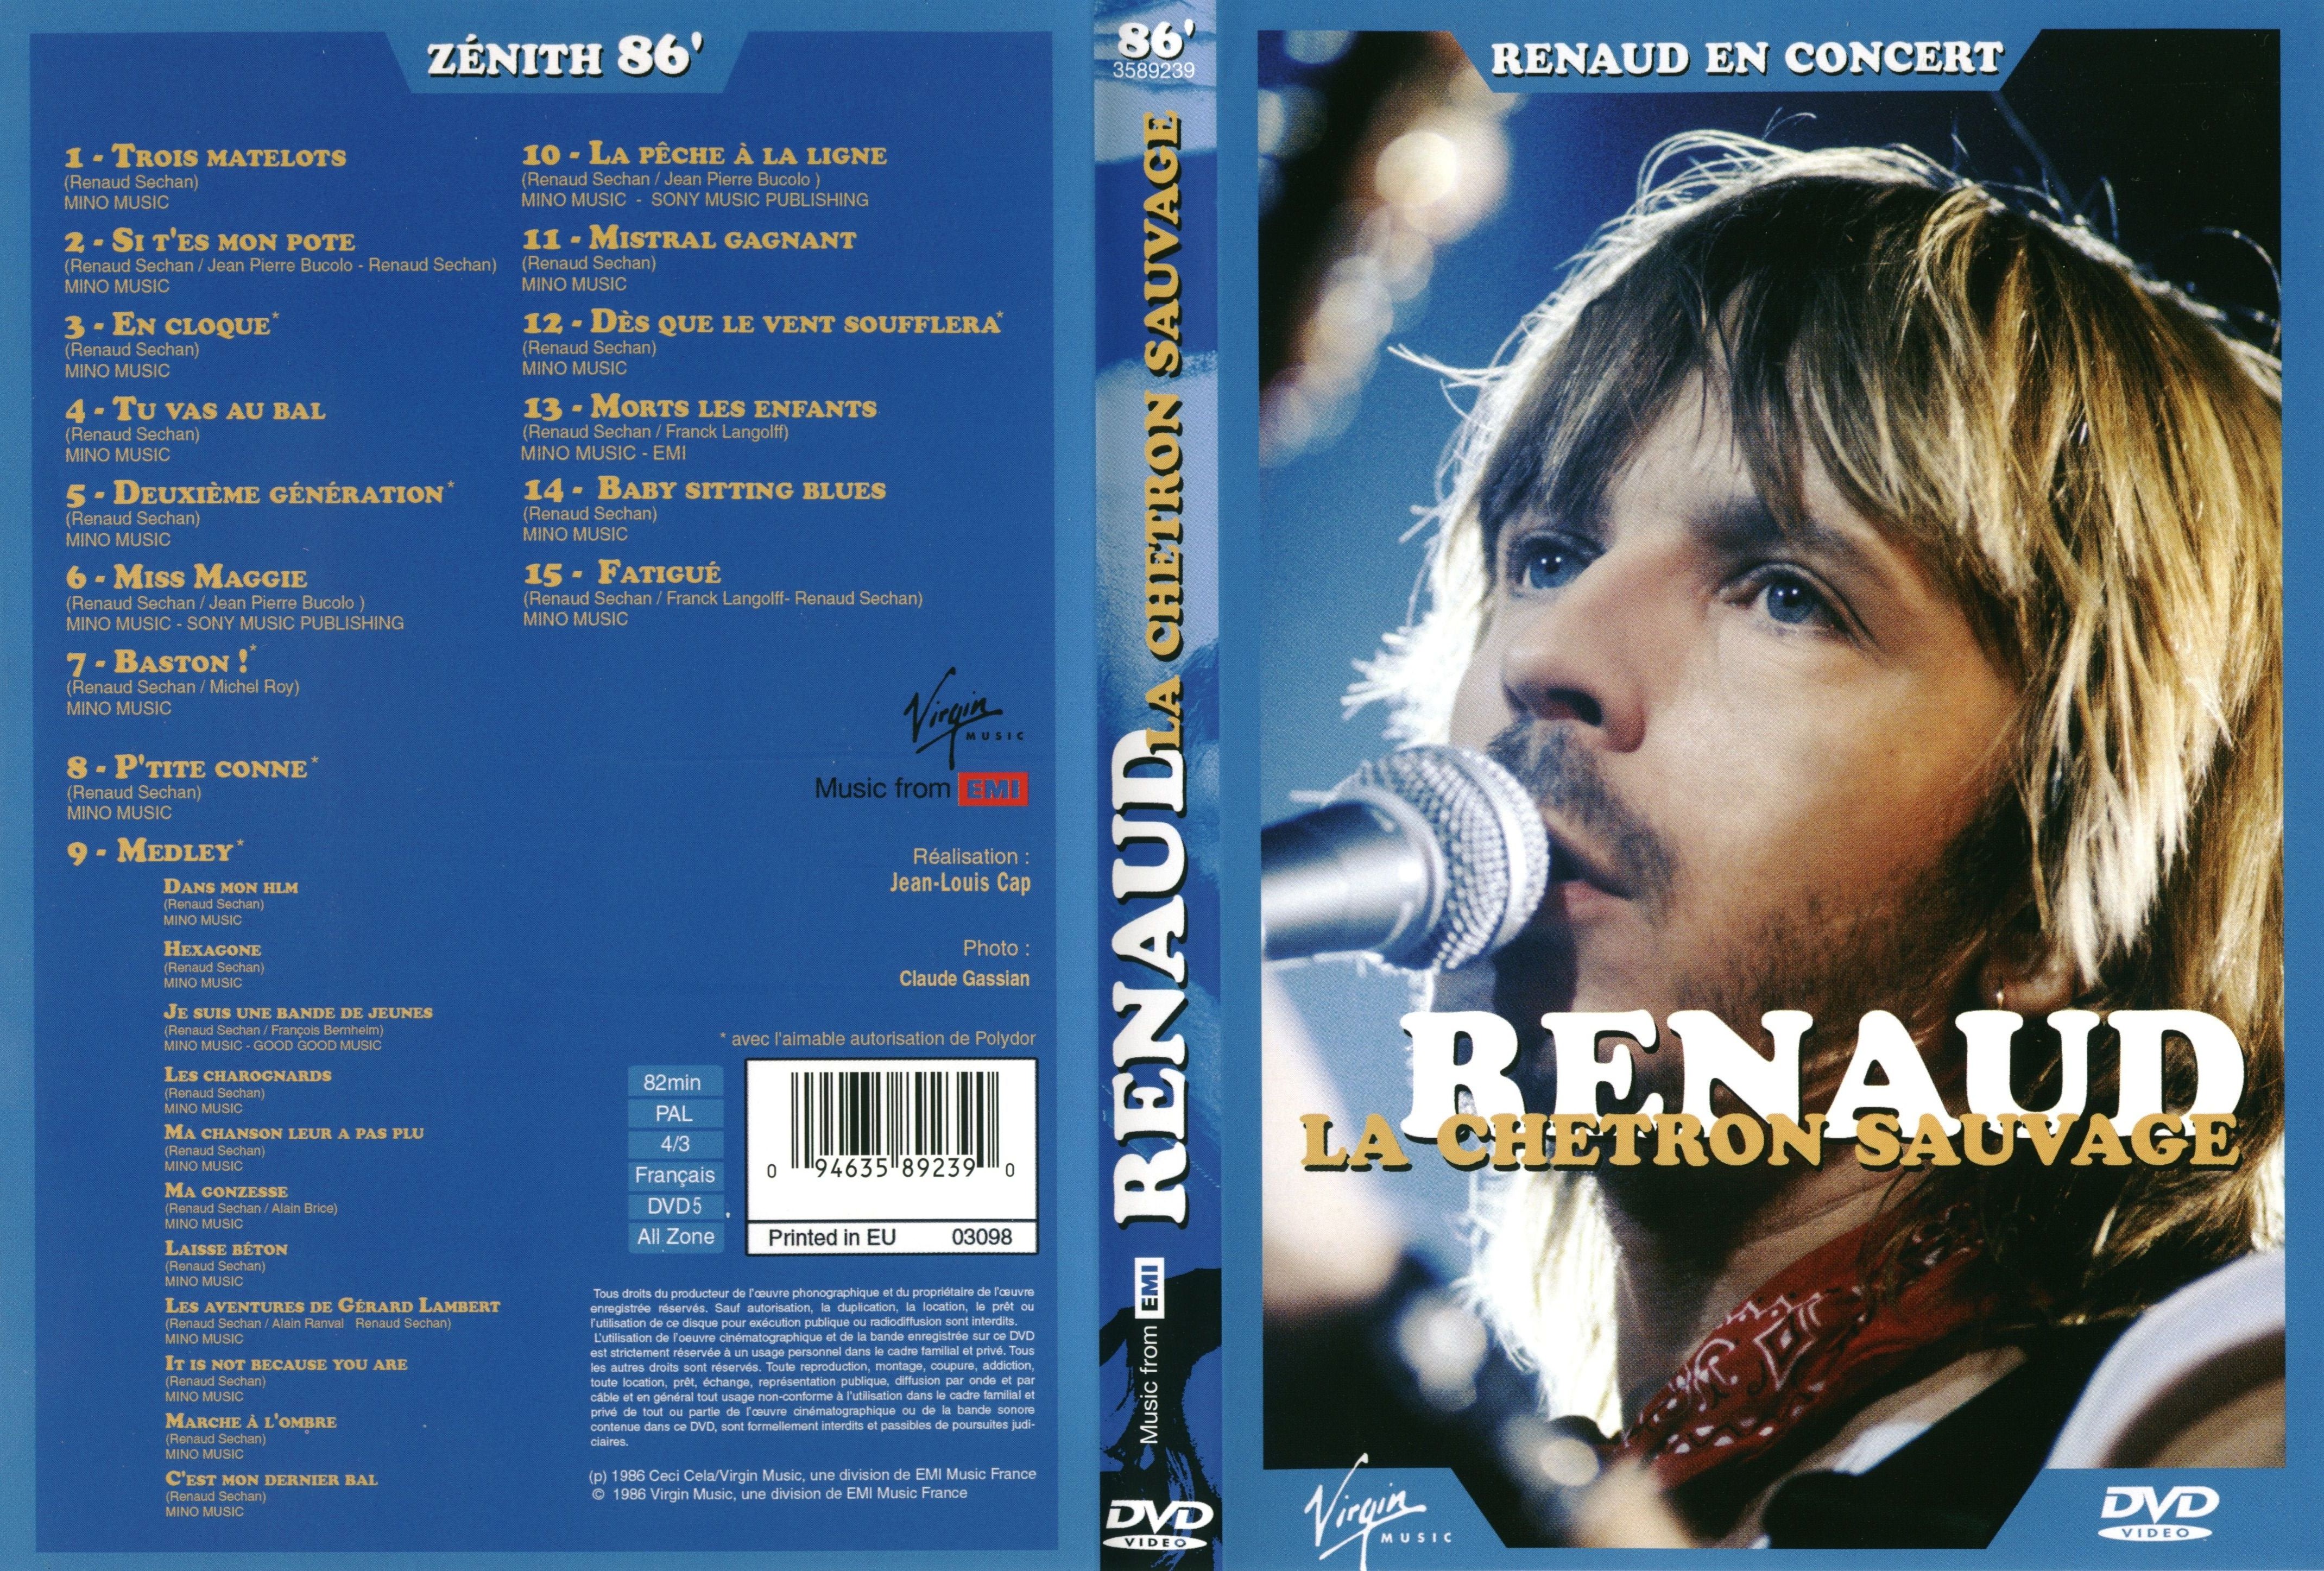 Jaquette DVD Renaud la chetron sauvage Zenith 1986